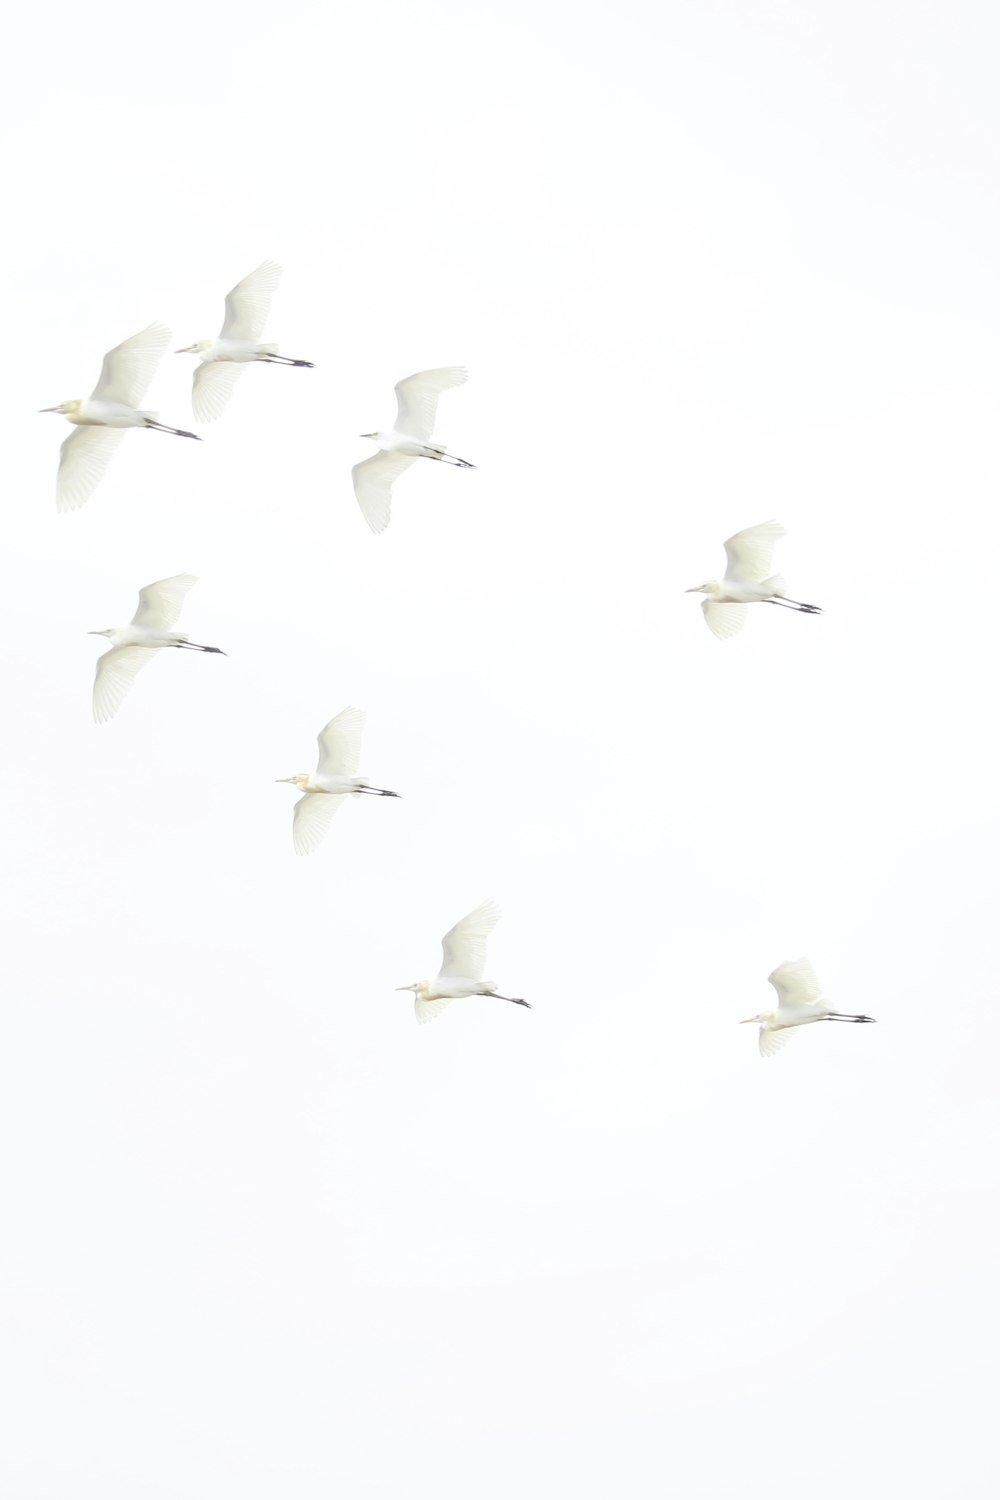 Una bandada de pájaros volando a través de un cielo blanco